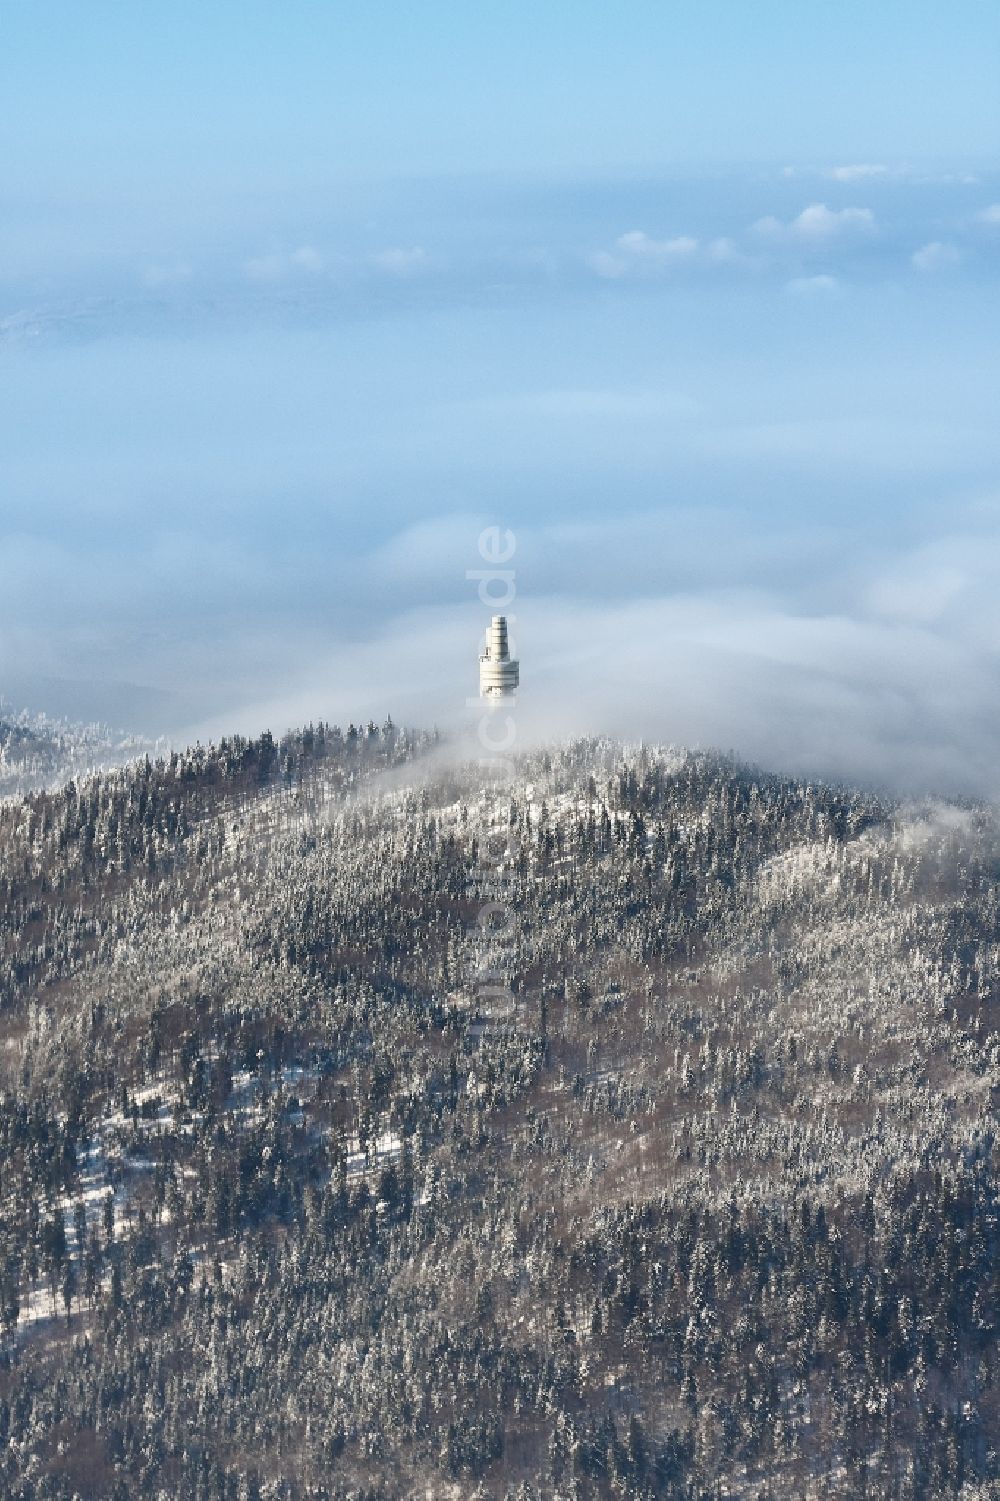 Luftbild Rimbach - Winterluftbild der Fernmeldetürmen auf dem Hohen Bogen bei Rimbach im Bundesland Bayern, Deutschland